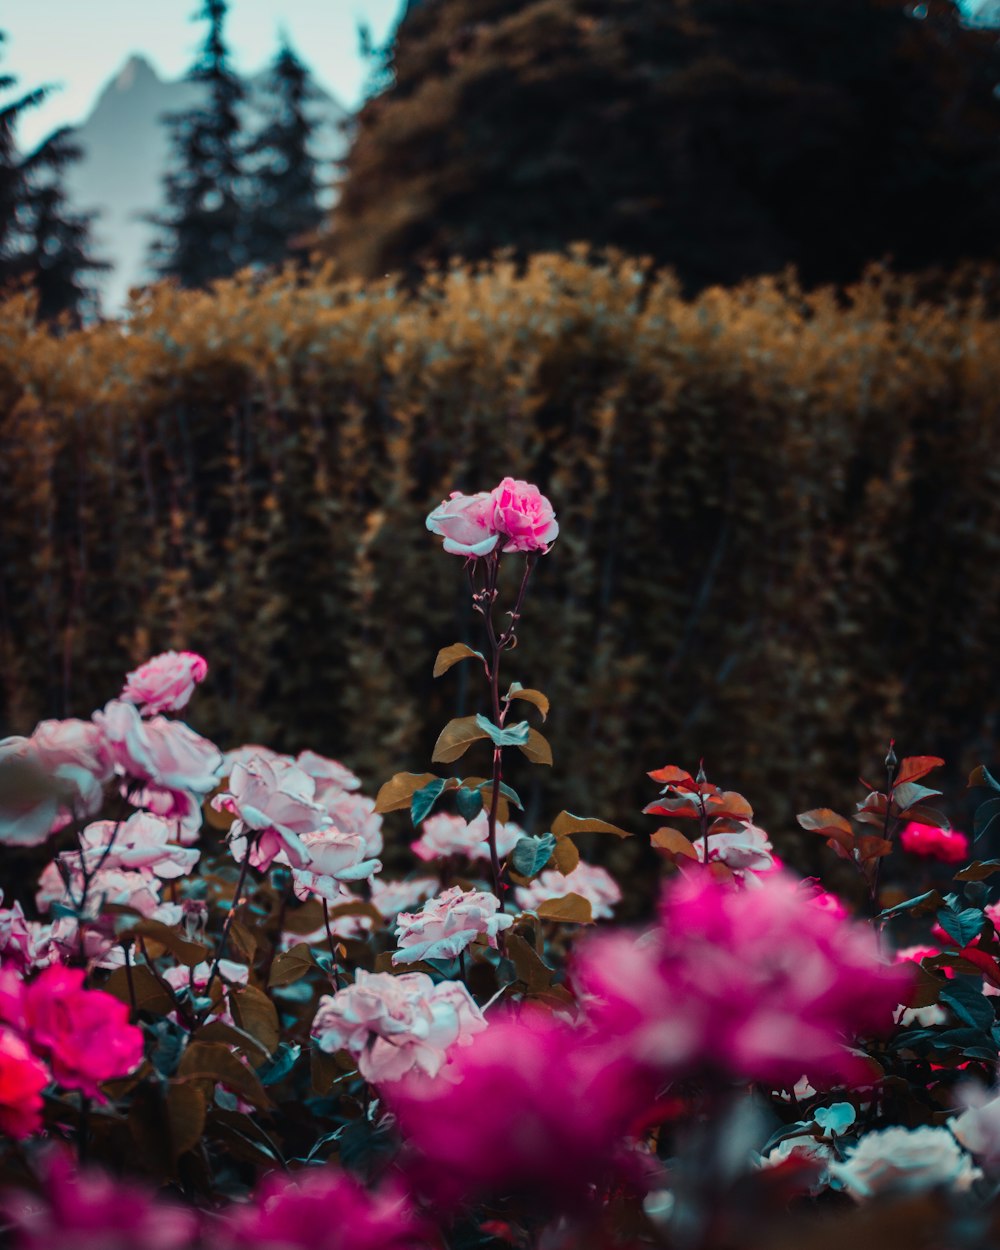 Flores rosas en lente de cambio de inclinación